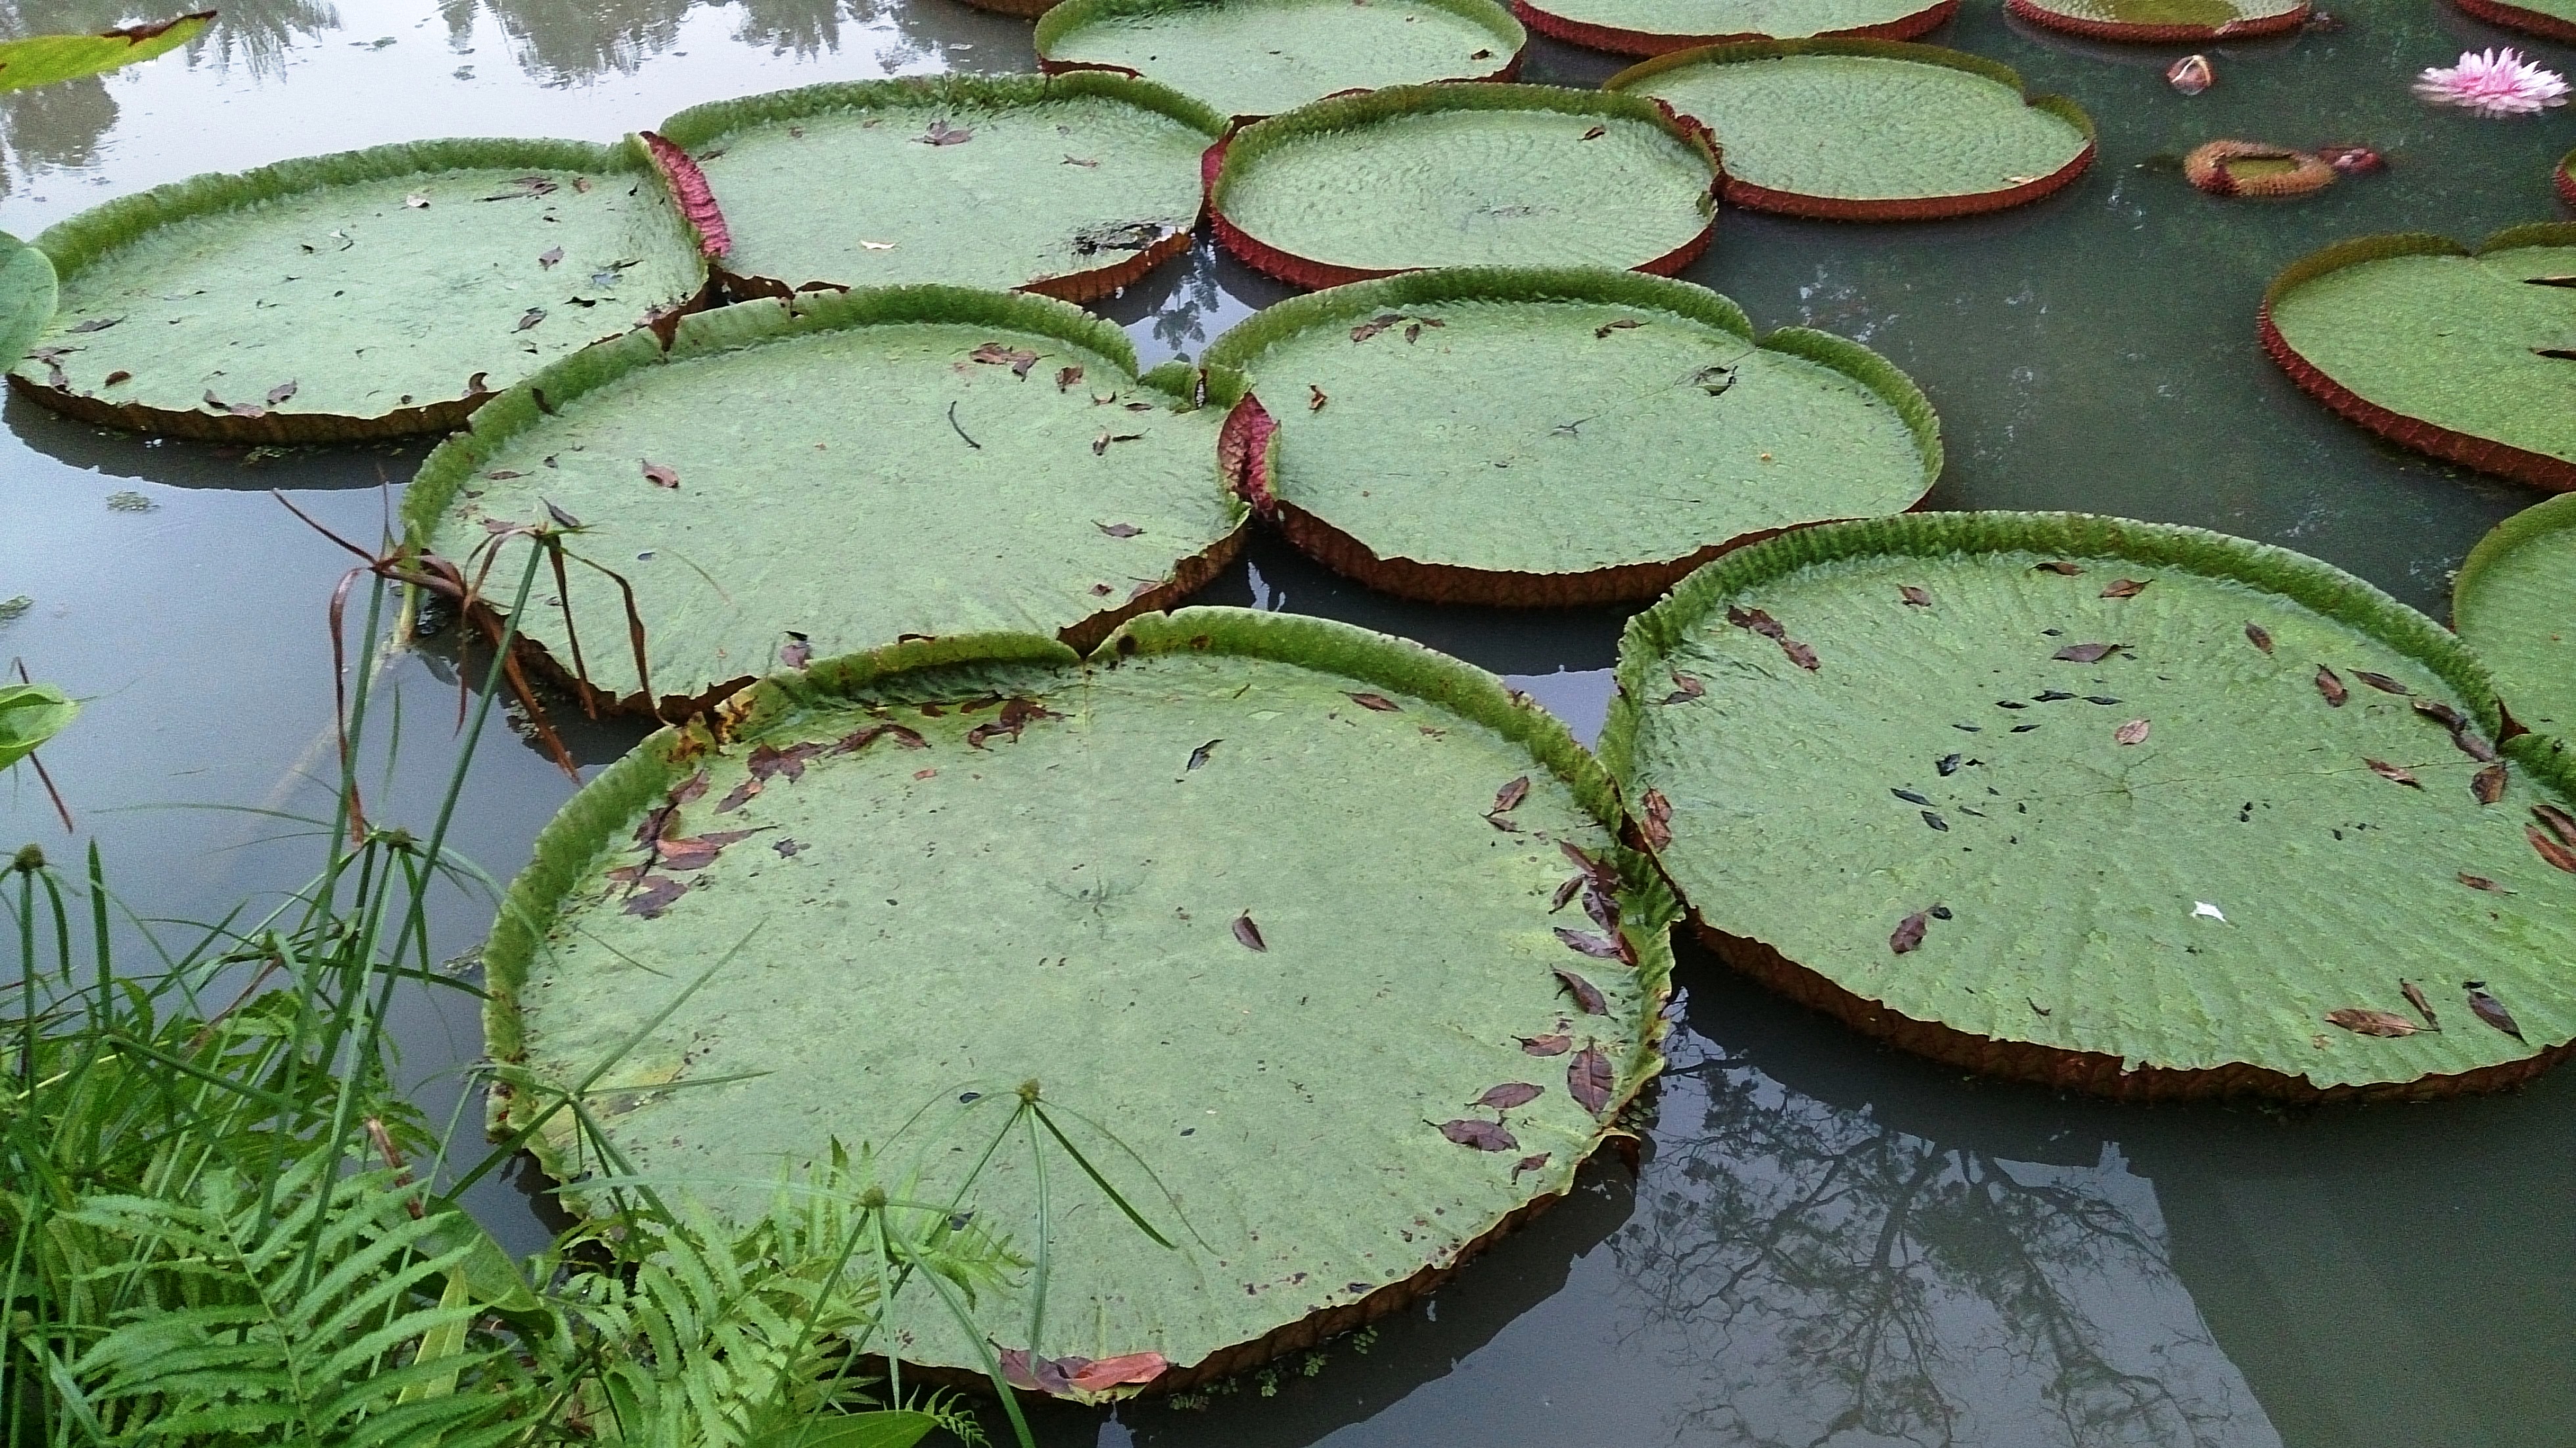 File:Amazon lily pad 1.jpg - Wikimedia Commons